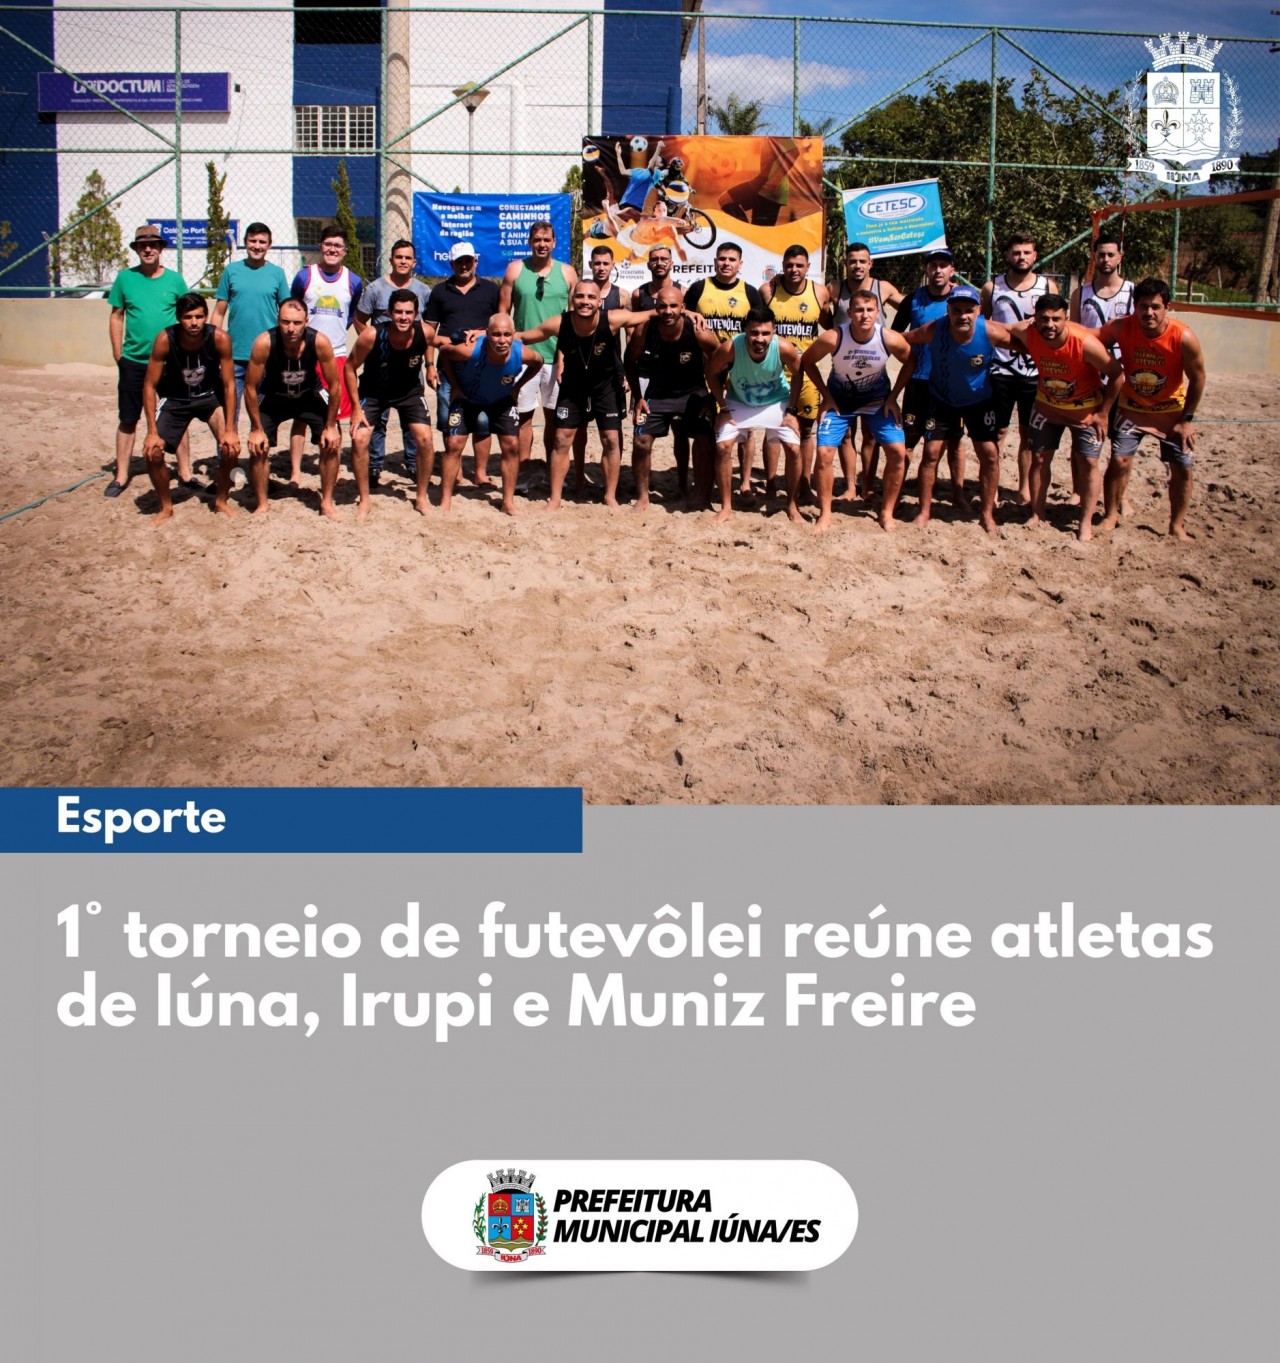 1° torneio de futevôlei reúne atletas de Iúna, Irupi e Muniz Freire.